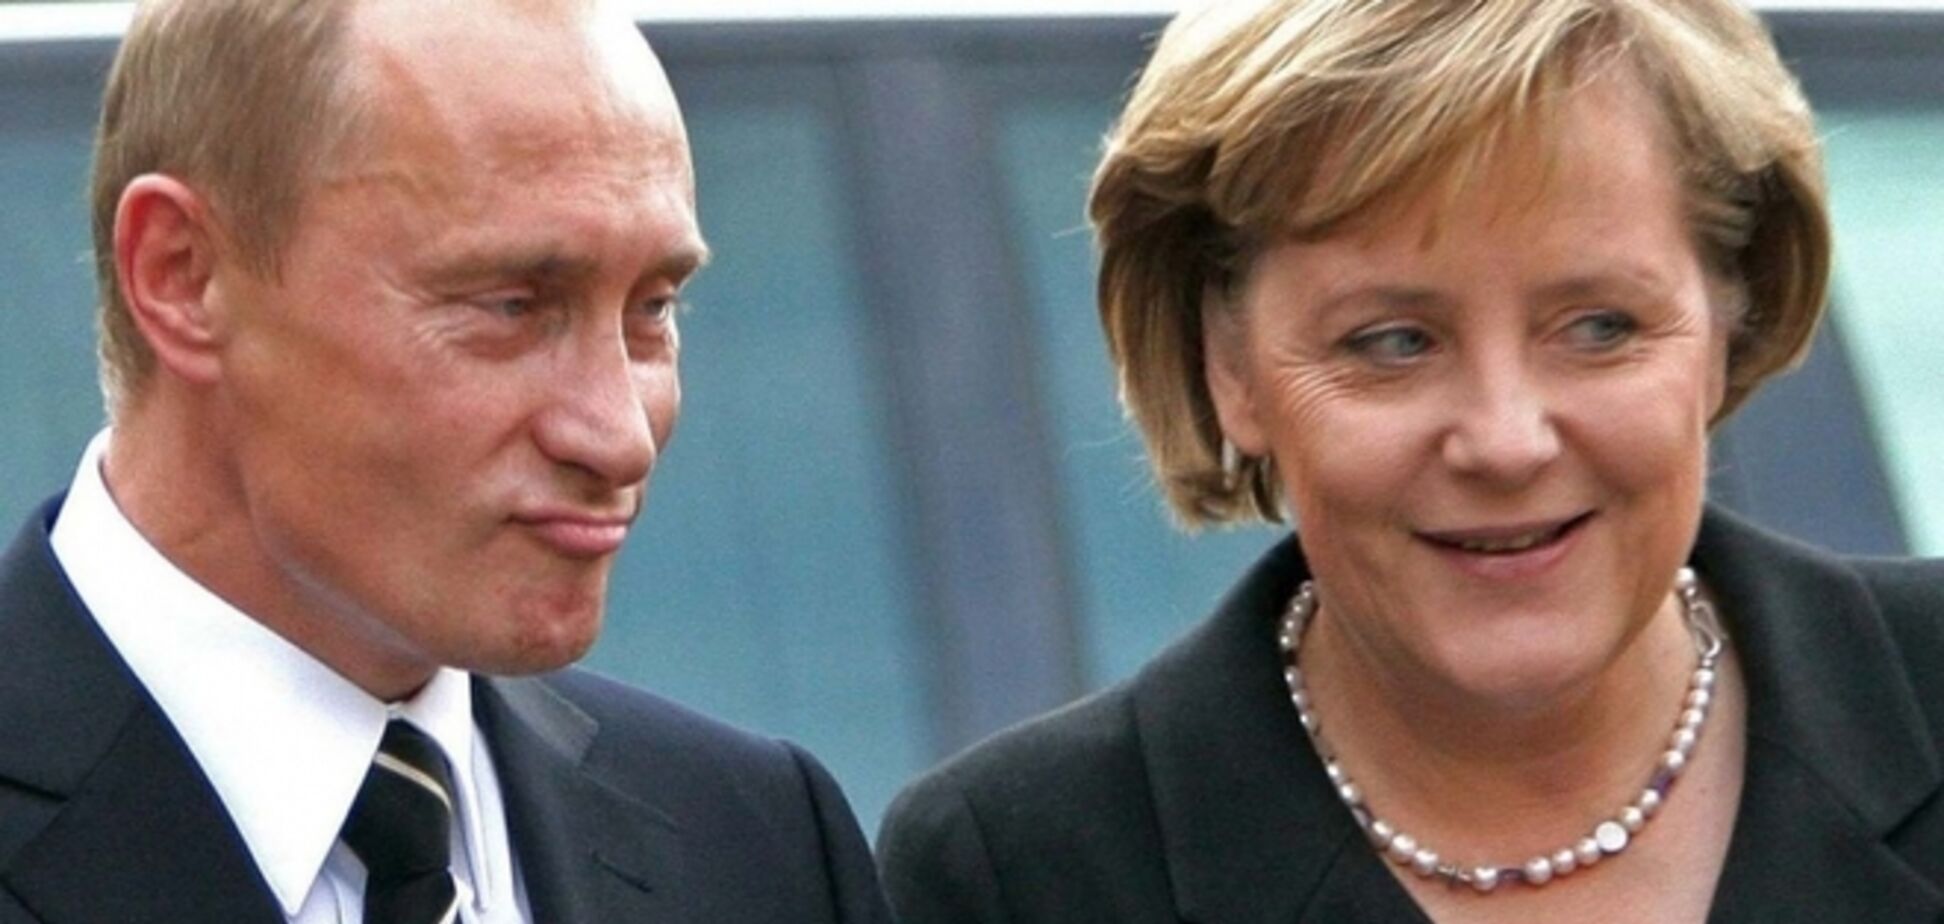 Данилов: Путин коррумпировал Европу посредством бывших коммунистических функционеров